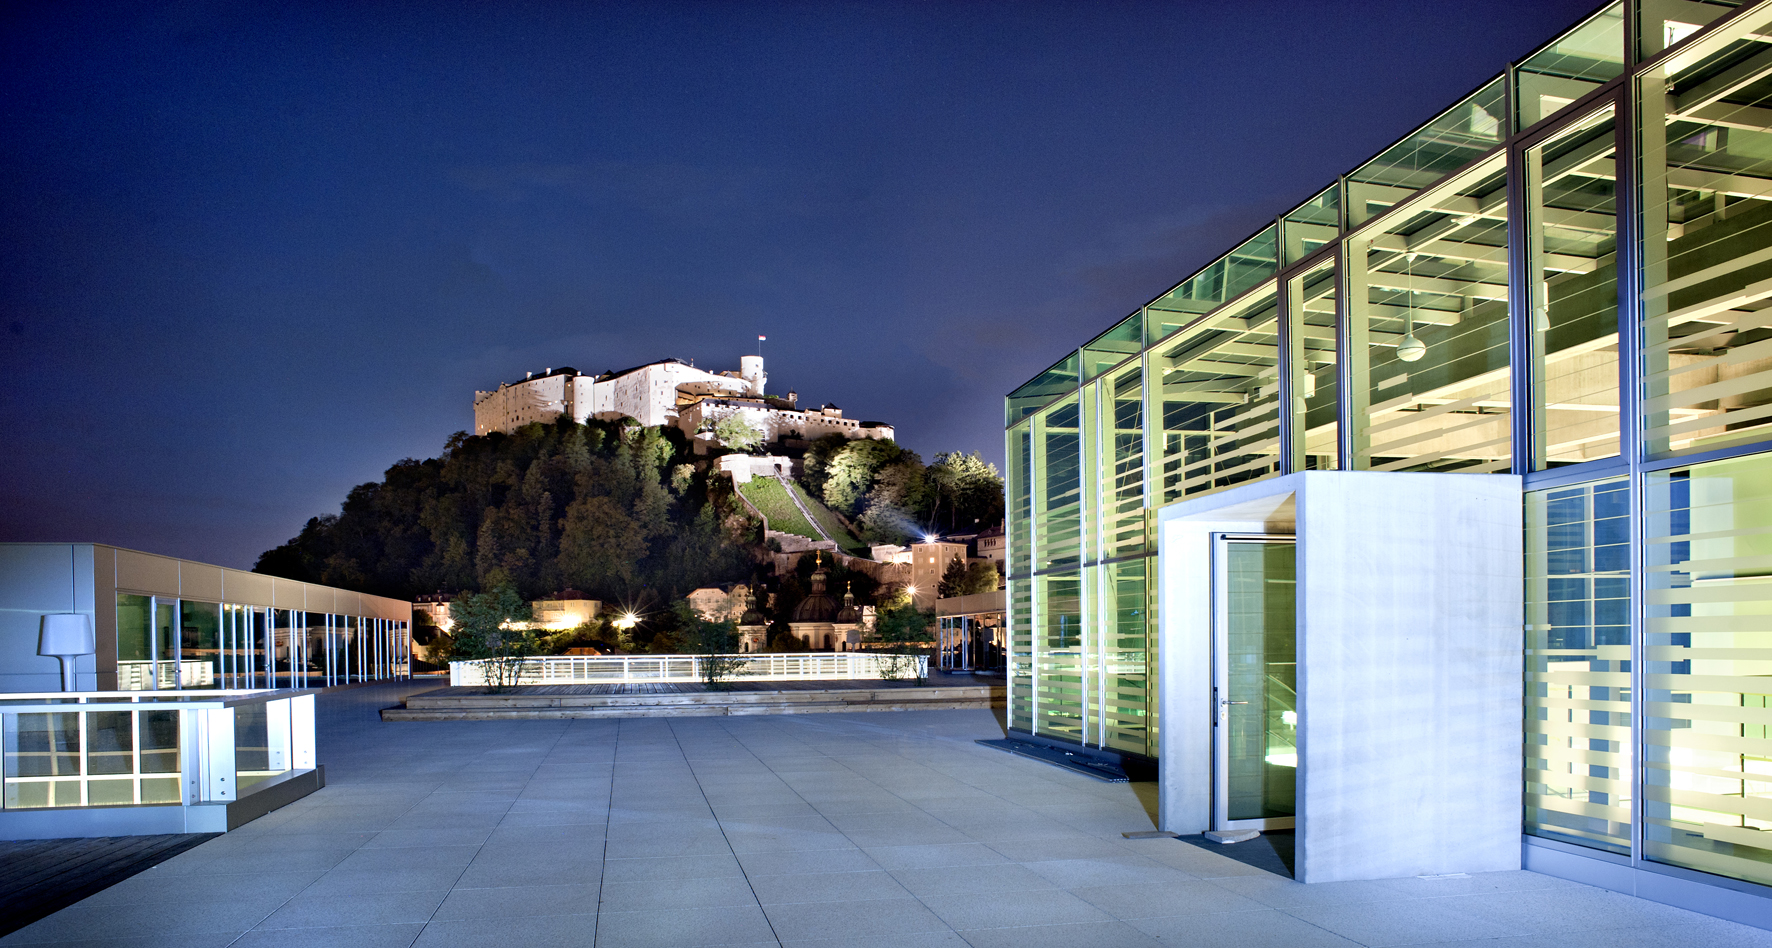 Universität Salzburg mit Festung im Hintergrund